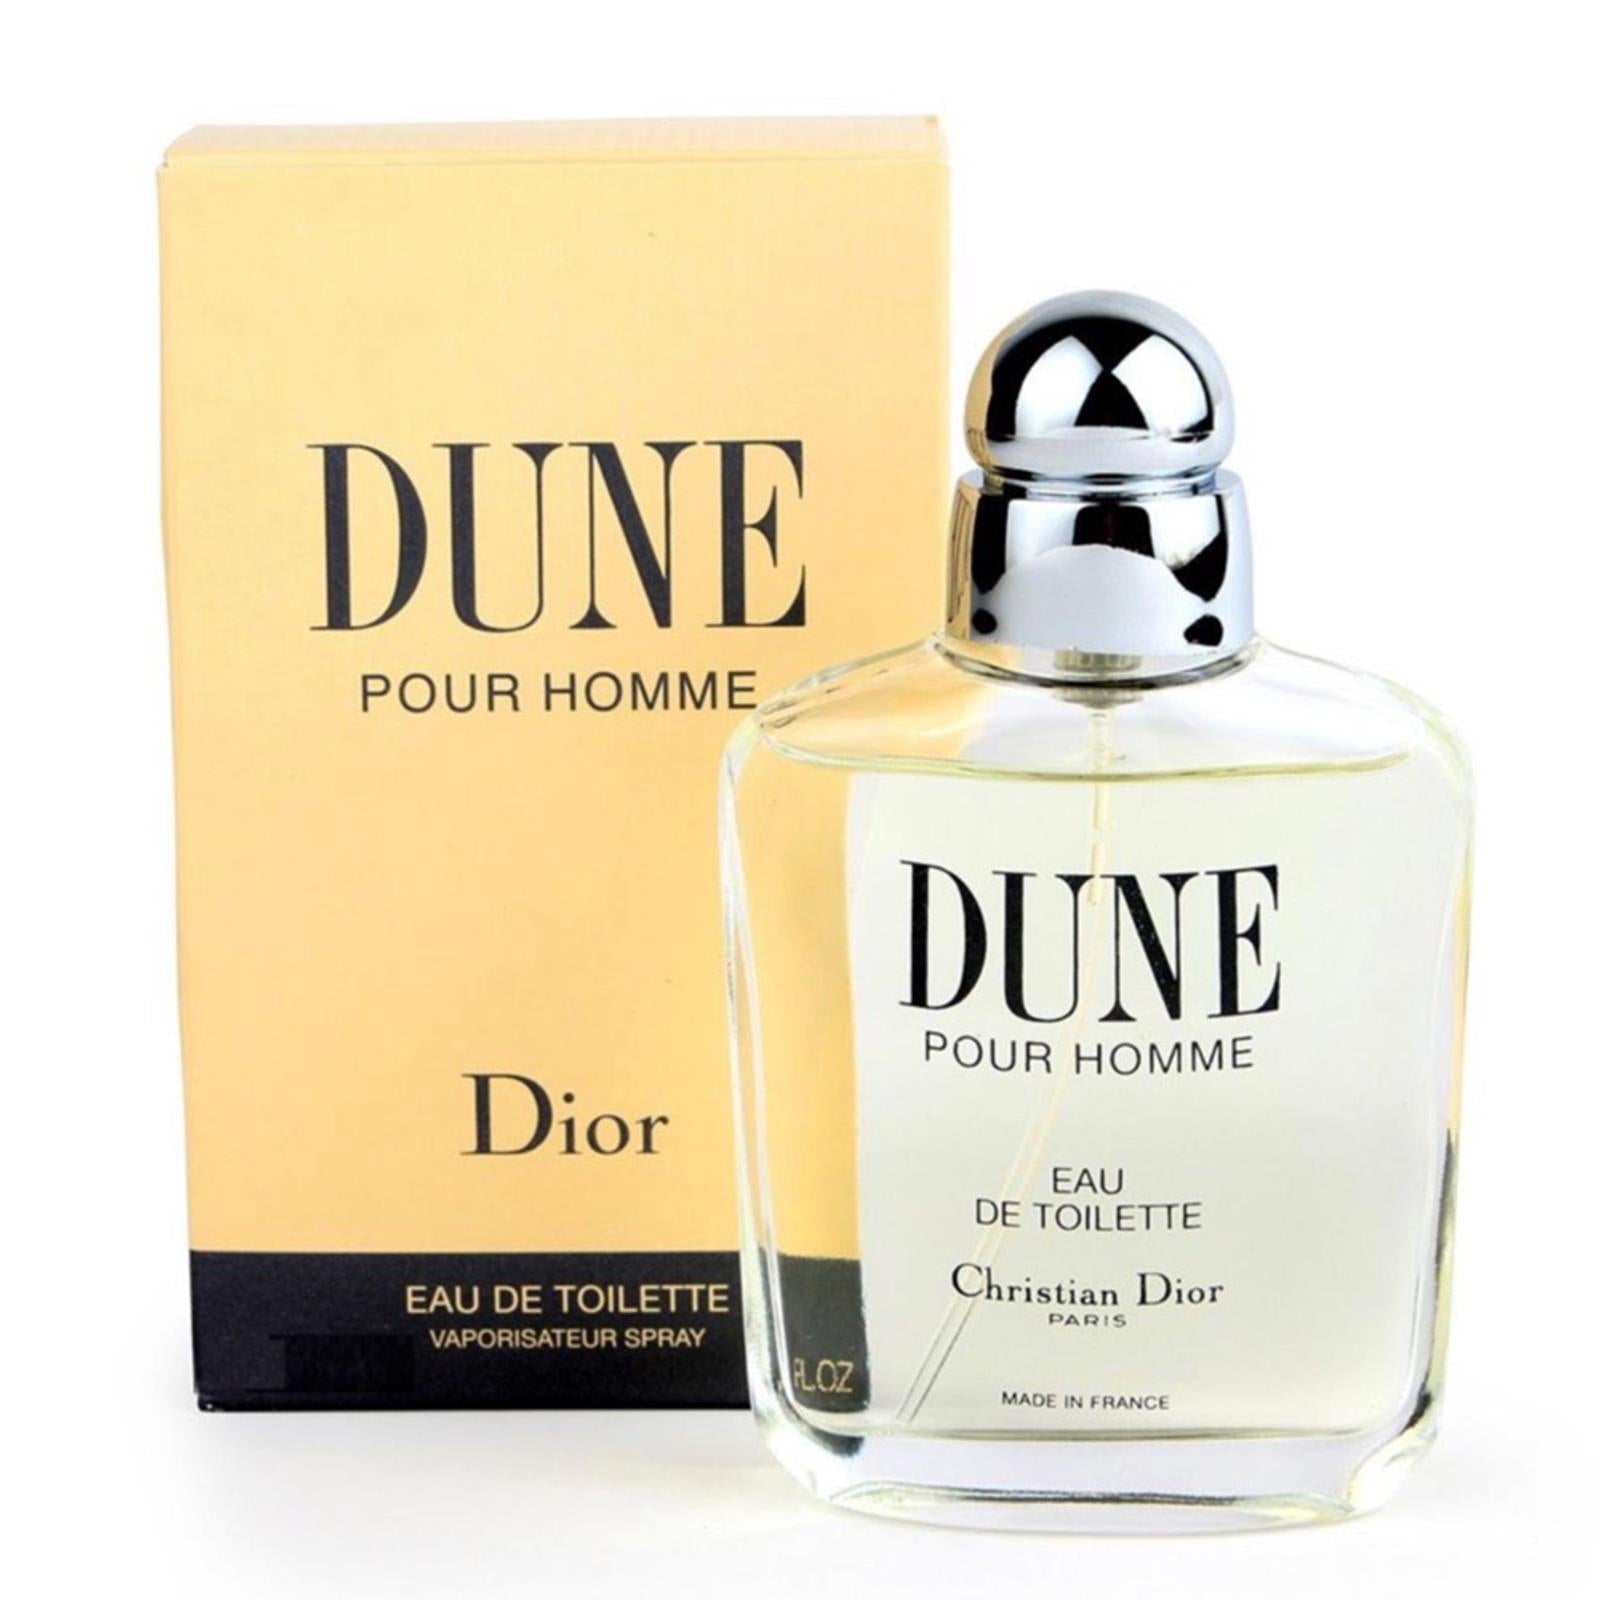 DIOR Dune Pour Homme Eau de Toilette Spray  The Perfume Shop